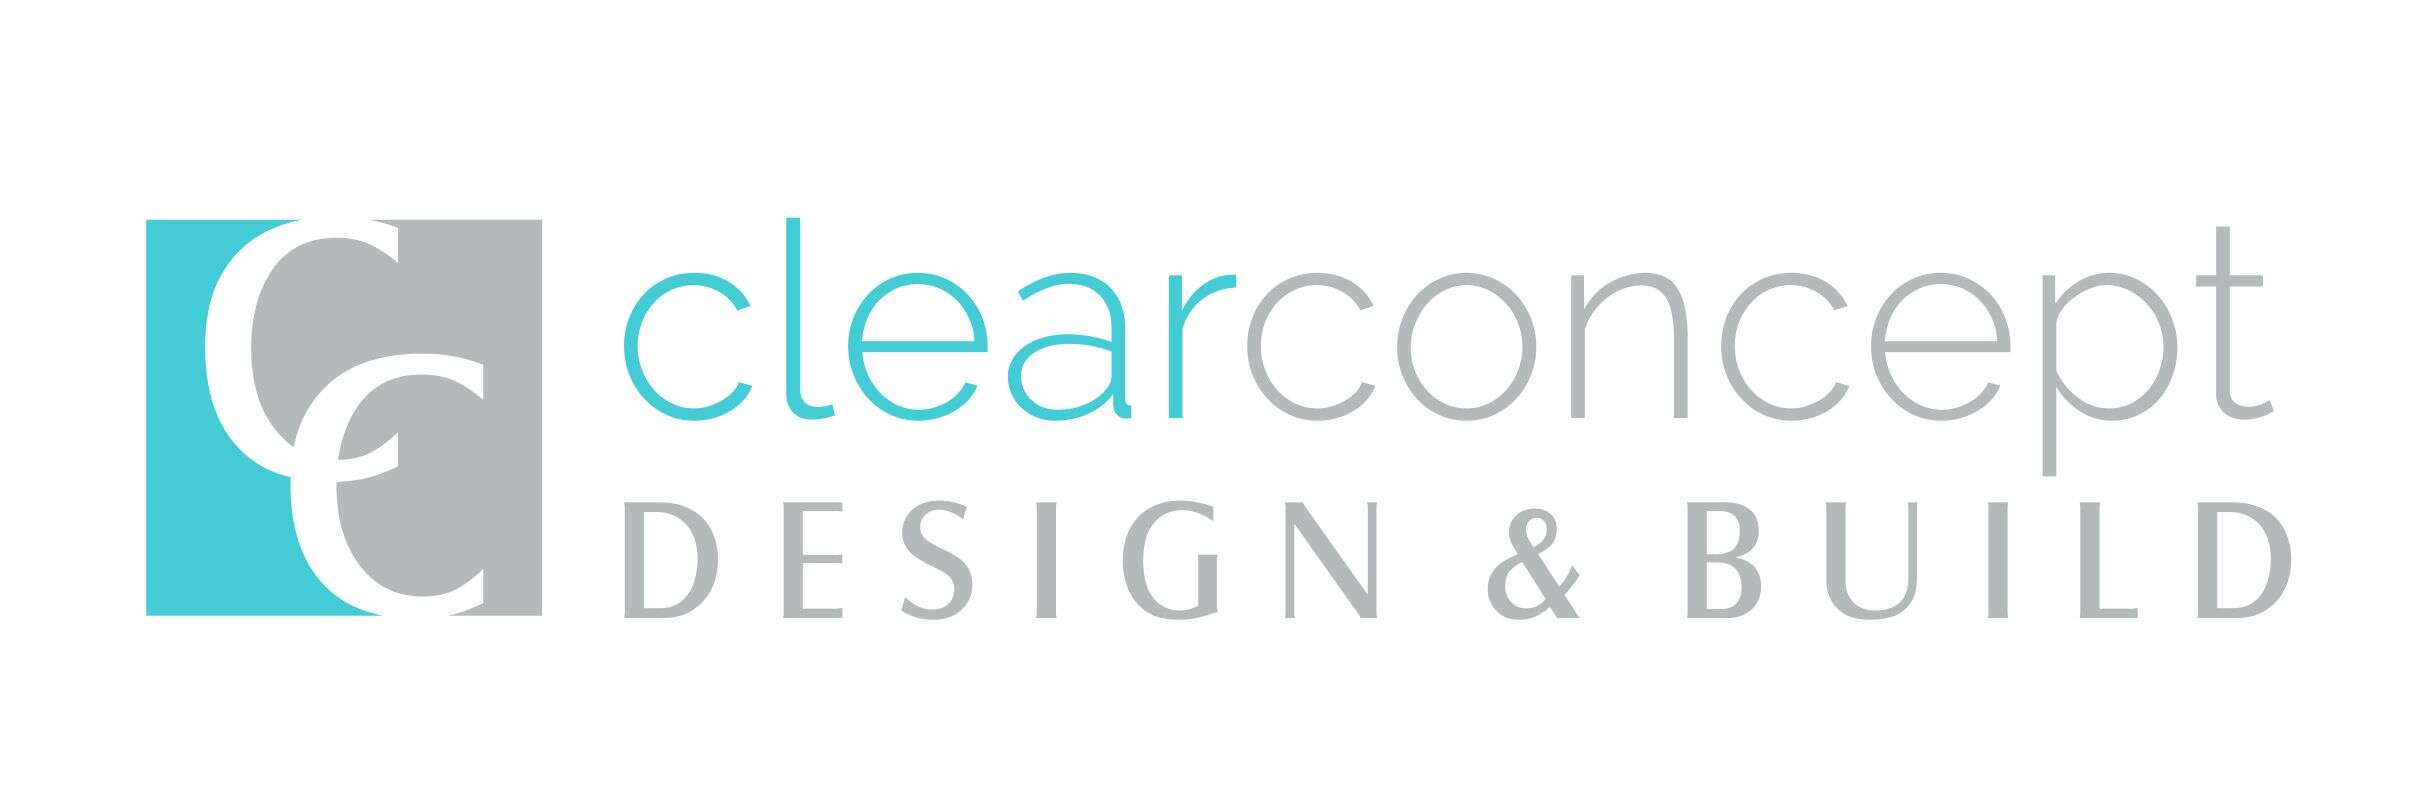 clear concept DESIGN & BUILD